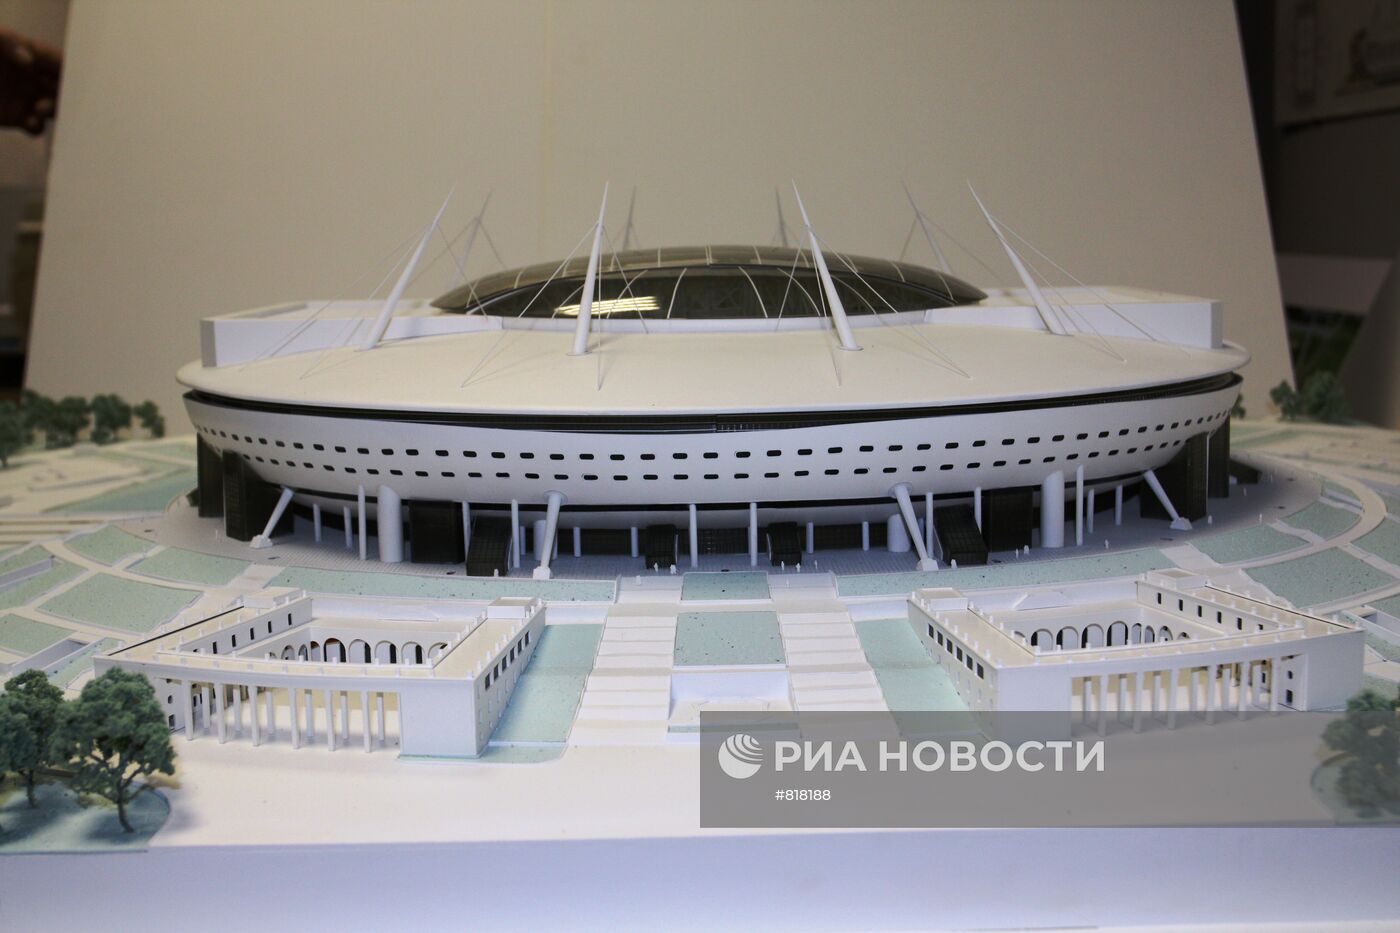 Макет нового стадиона "Зенит"